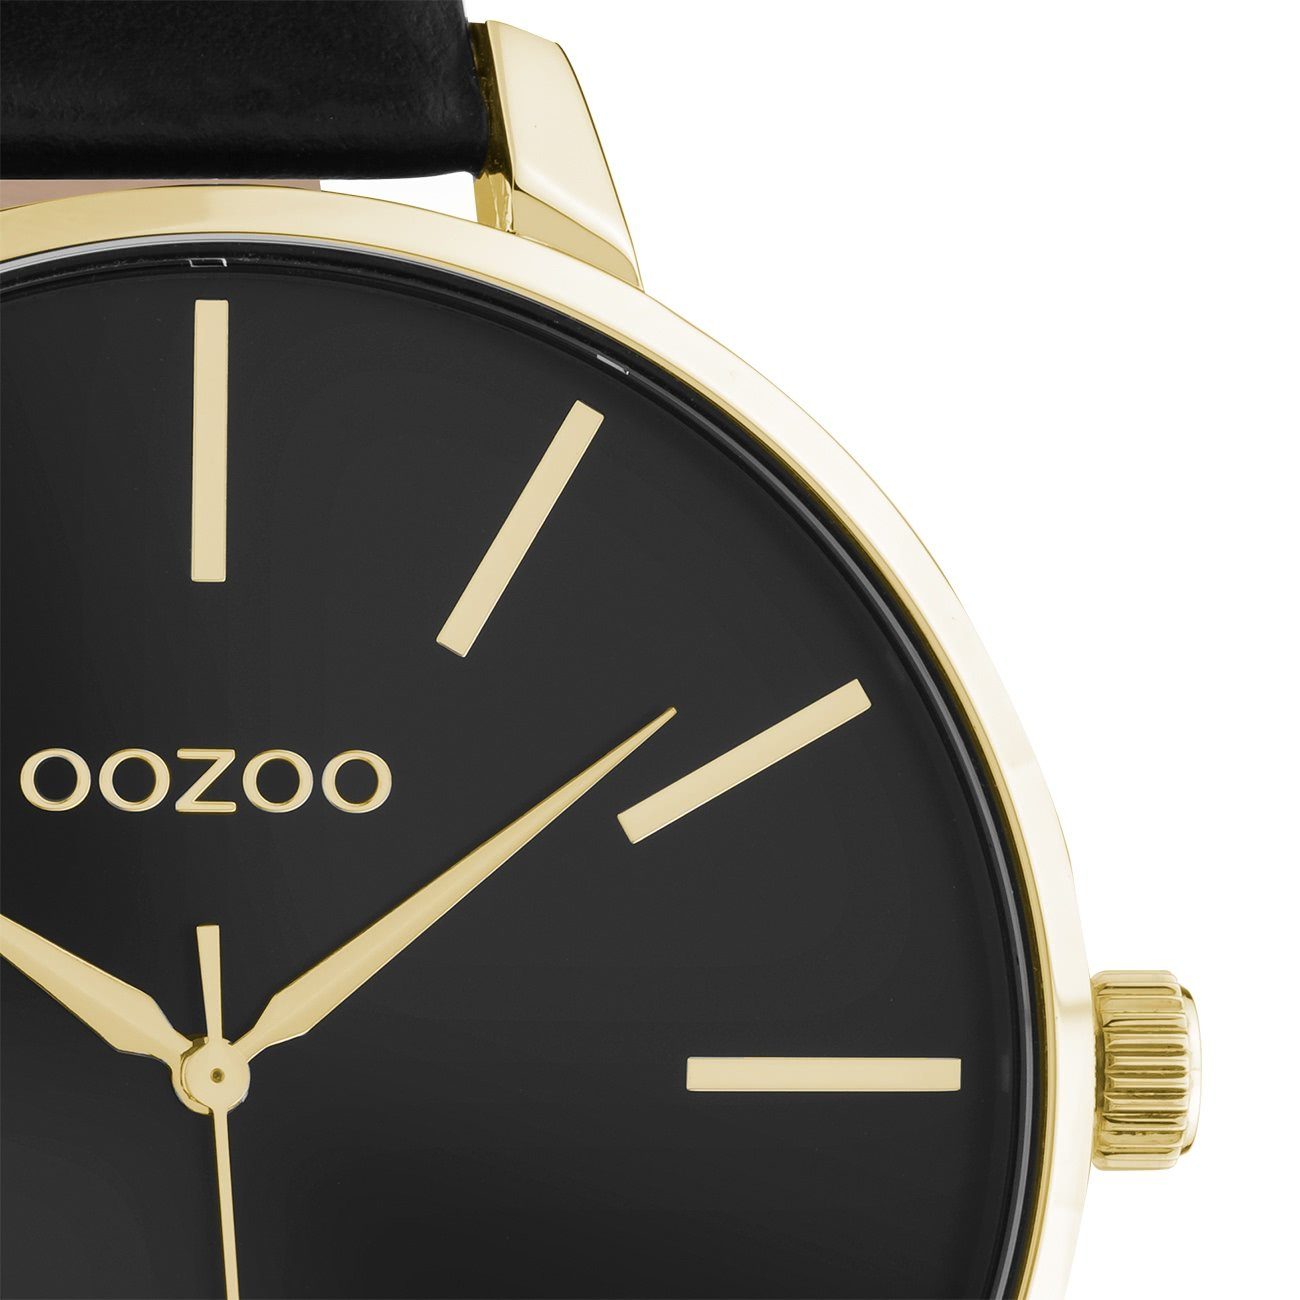 OOZOO Quarzuhr Oozoo Damen (ca. schwarz, Armbanduhr Timepieces, OOZOO 48mm), Lederarmband rund, groß Damenuhr Fashion extra